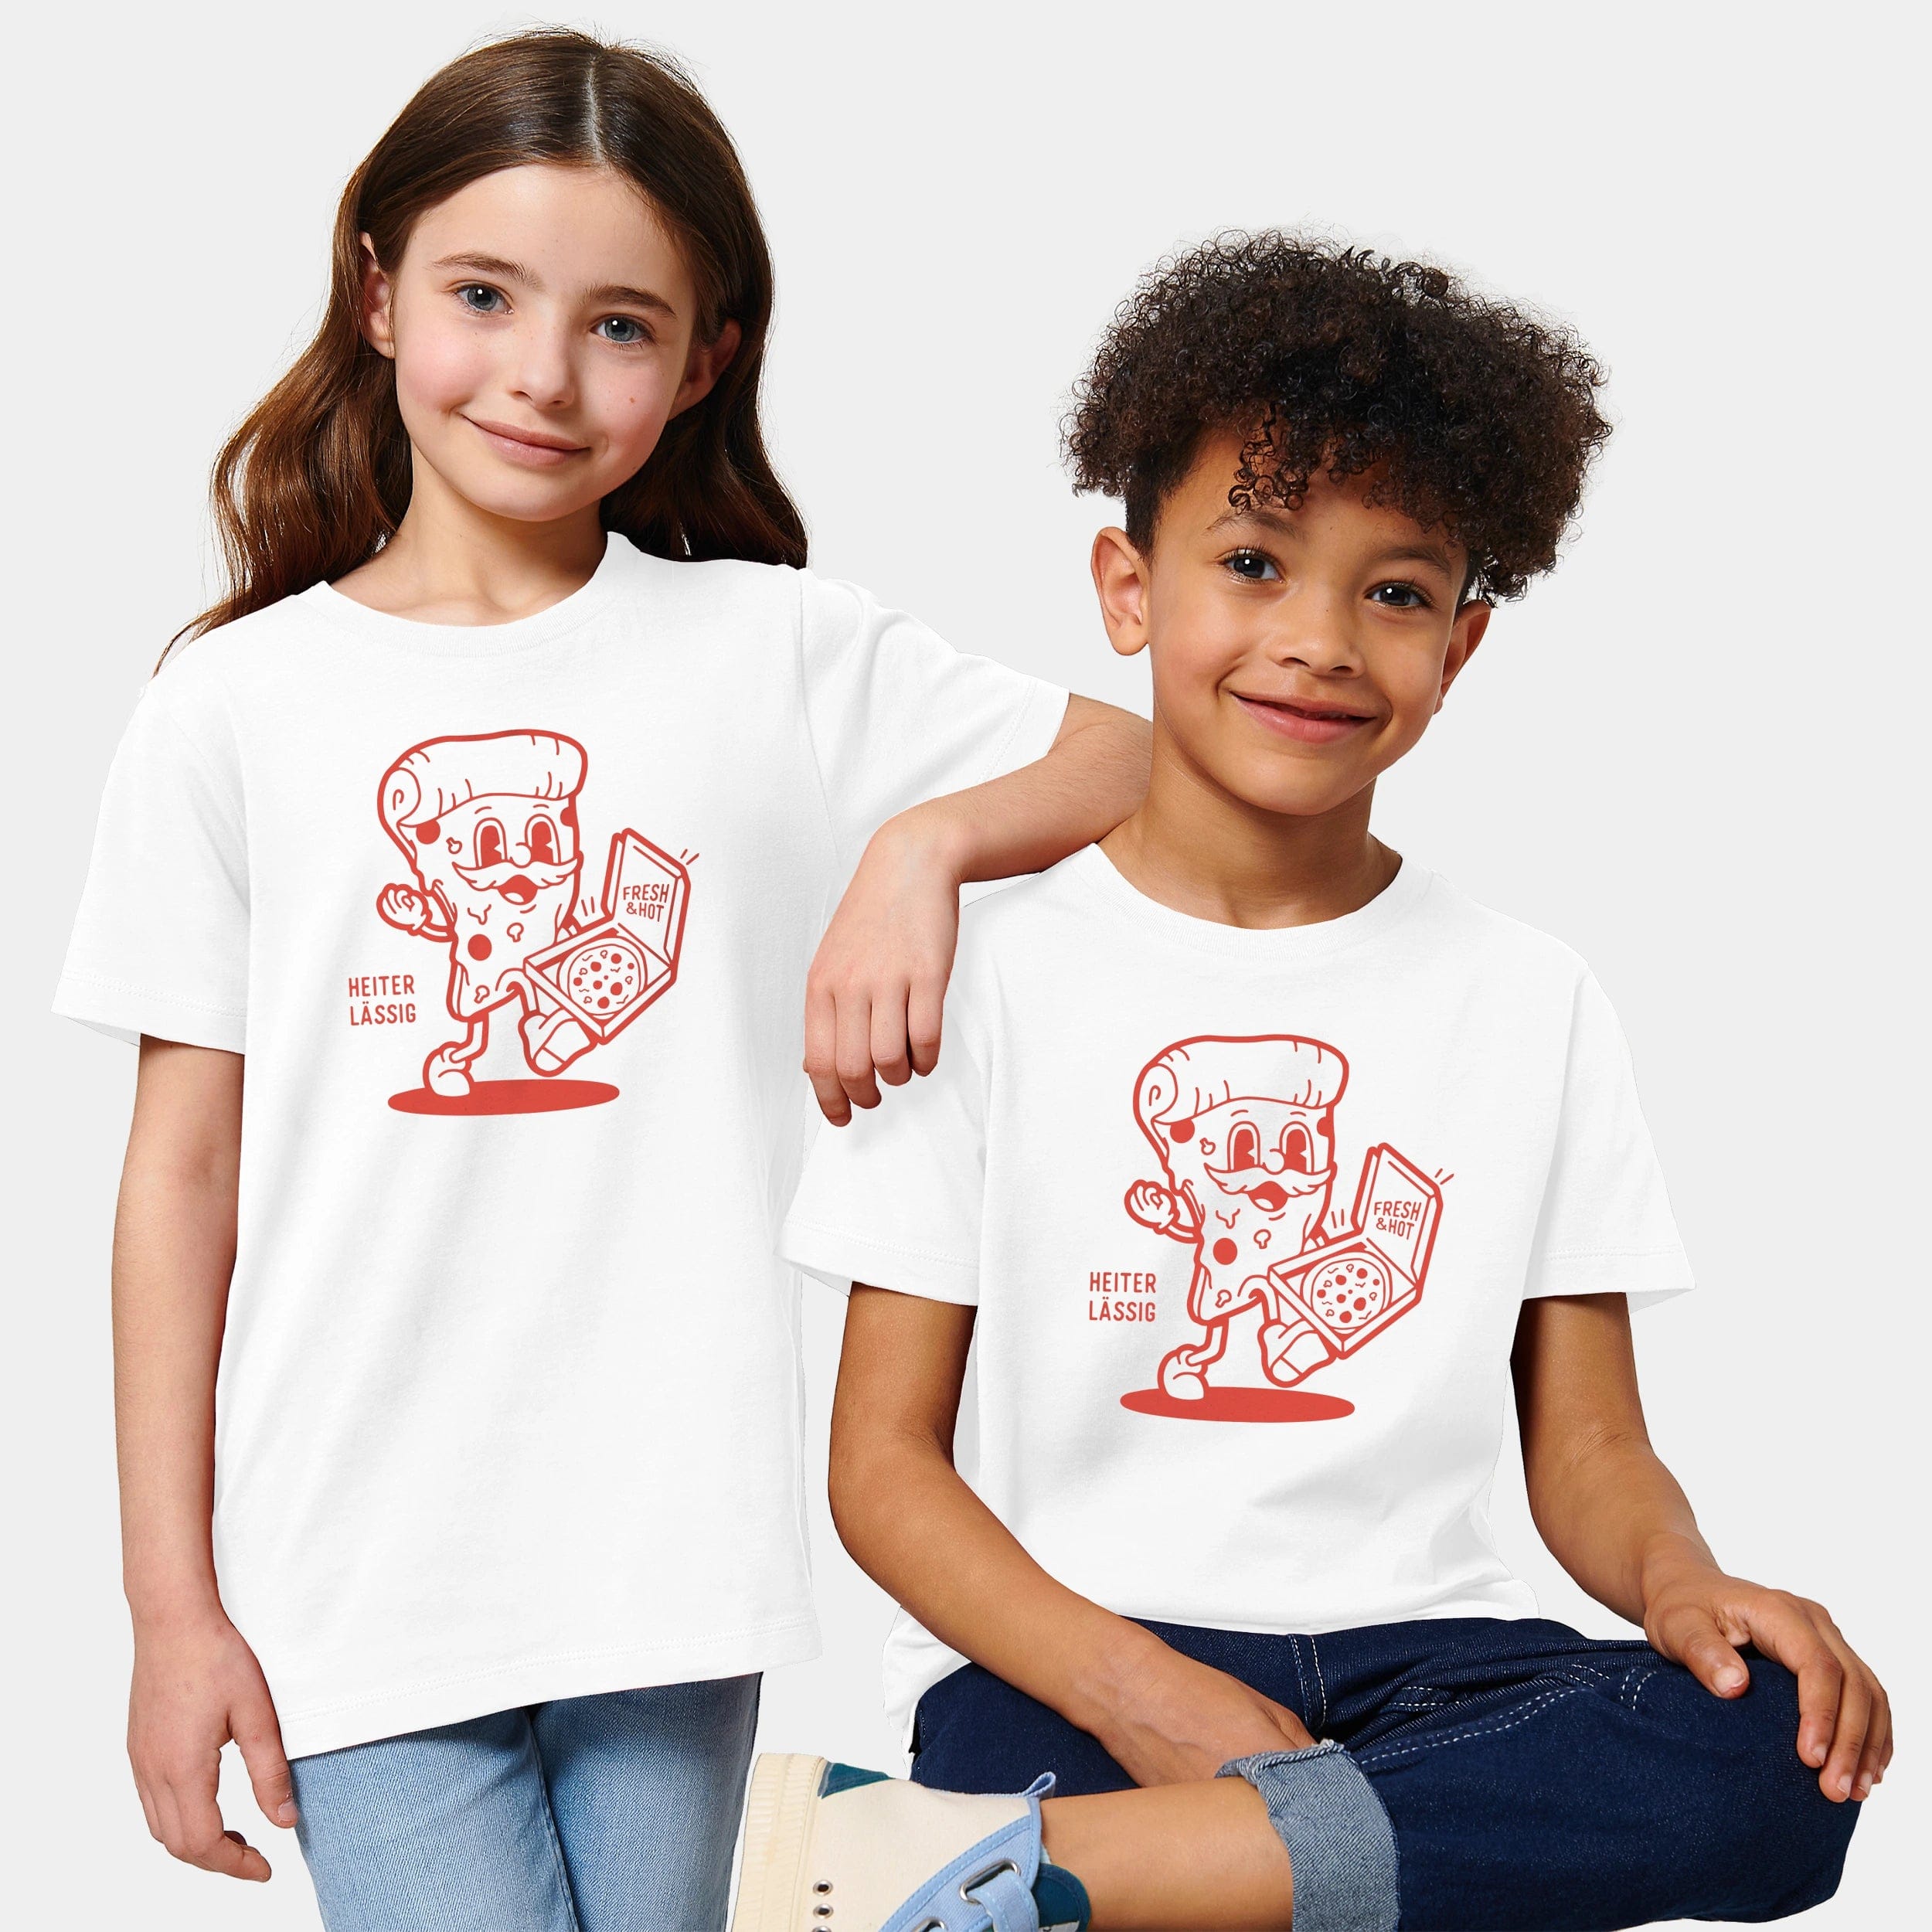 HEITER & LÄSSIG Kinder T-Shirt "Pizza" - aus nachhaltiger und fairer Produktion